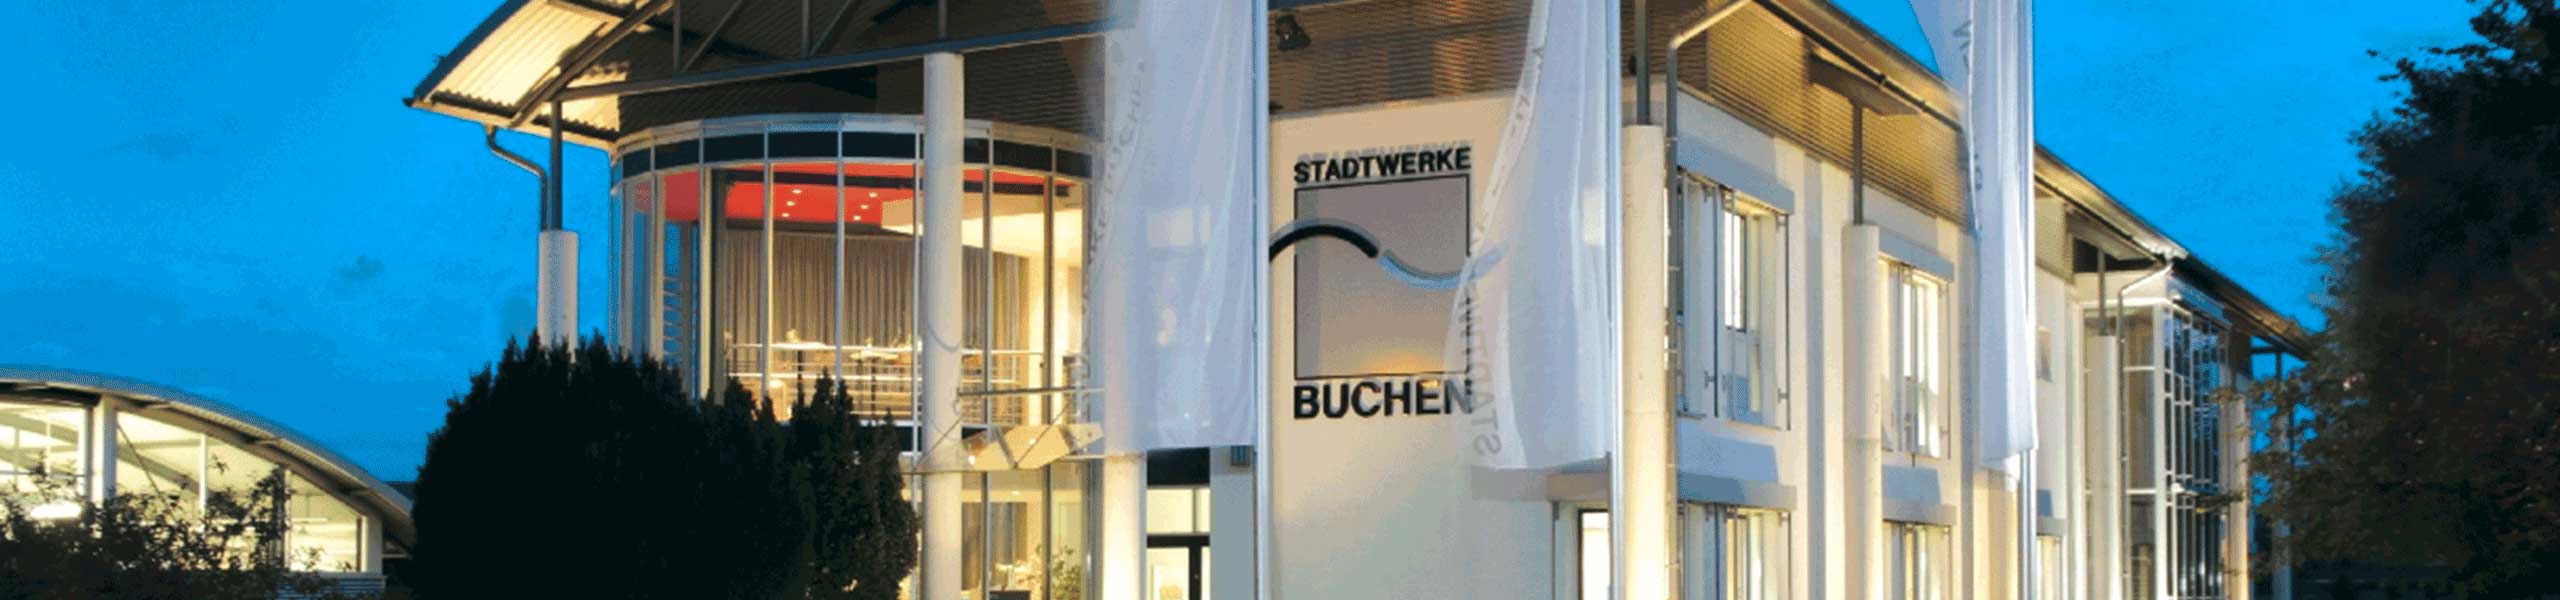 Stadtwerke Buchen GmbH & Co KG - Buchen